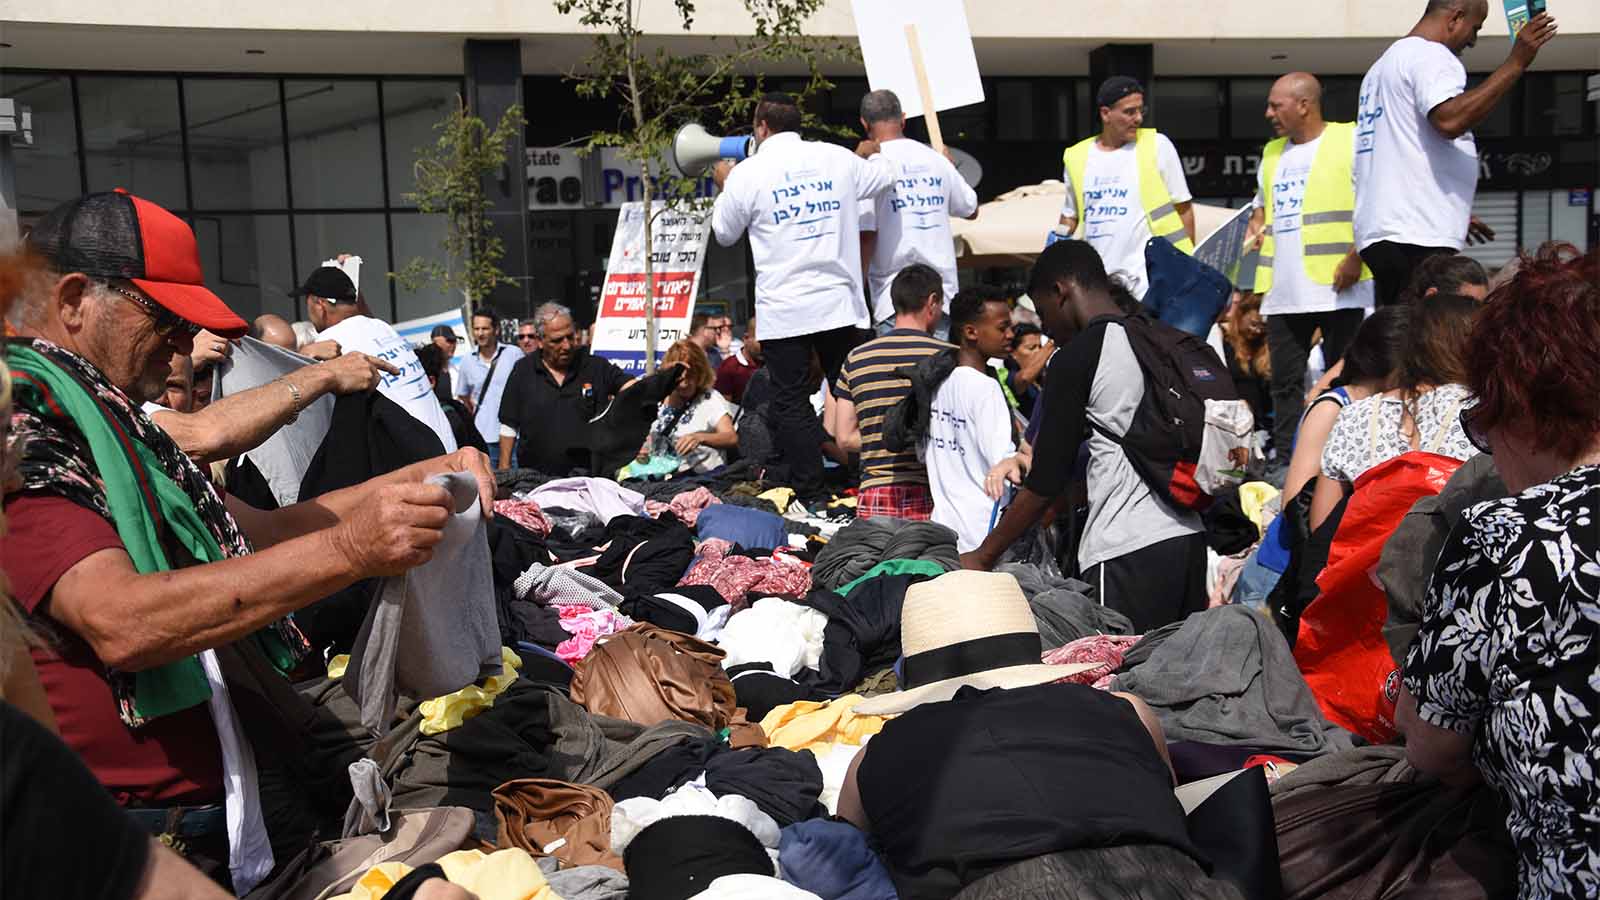 הפגנת התנועה לעידוד האופנה בישראל במחאה על מדיניות האוצר. 7 ביוני (צילום: מור הופרט)